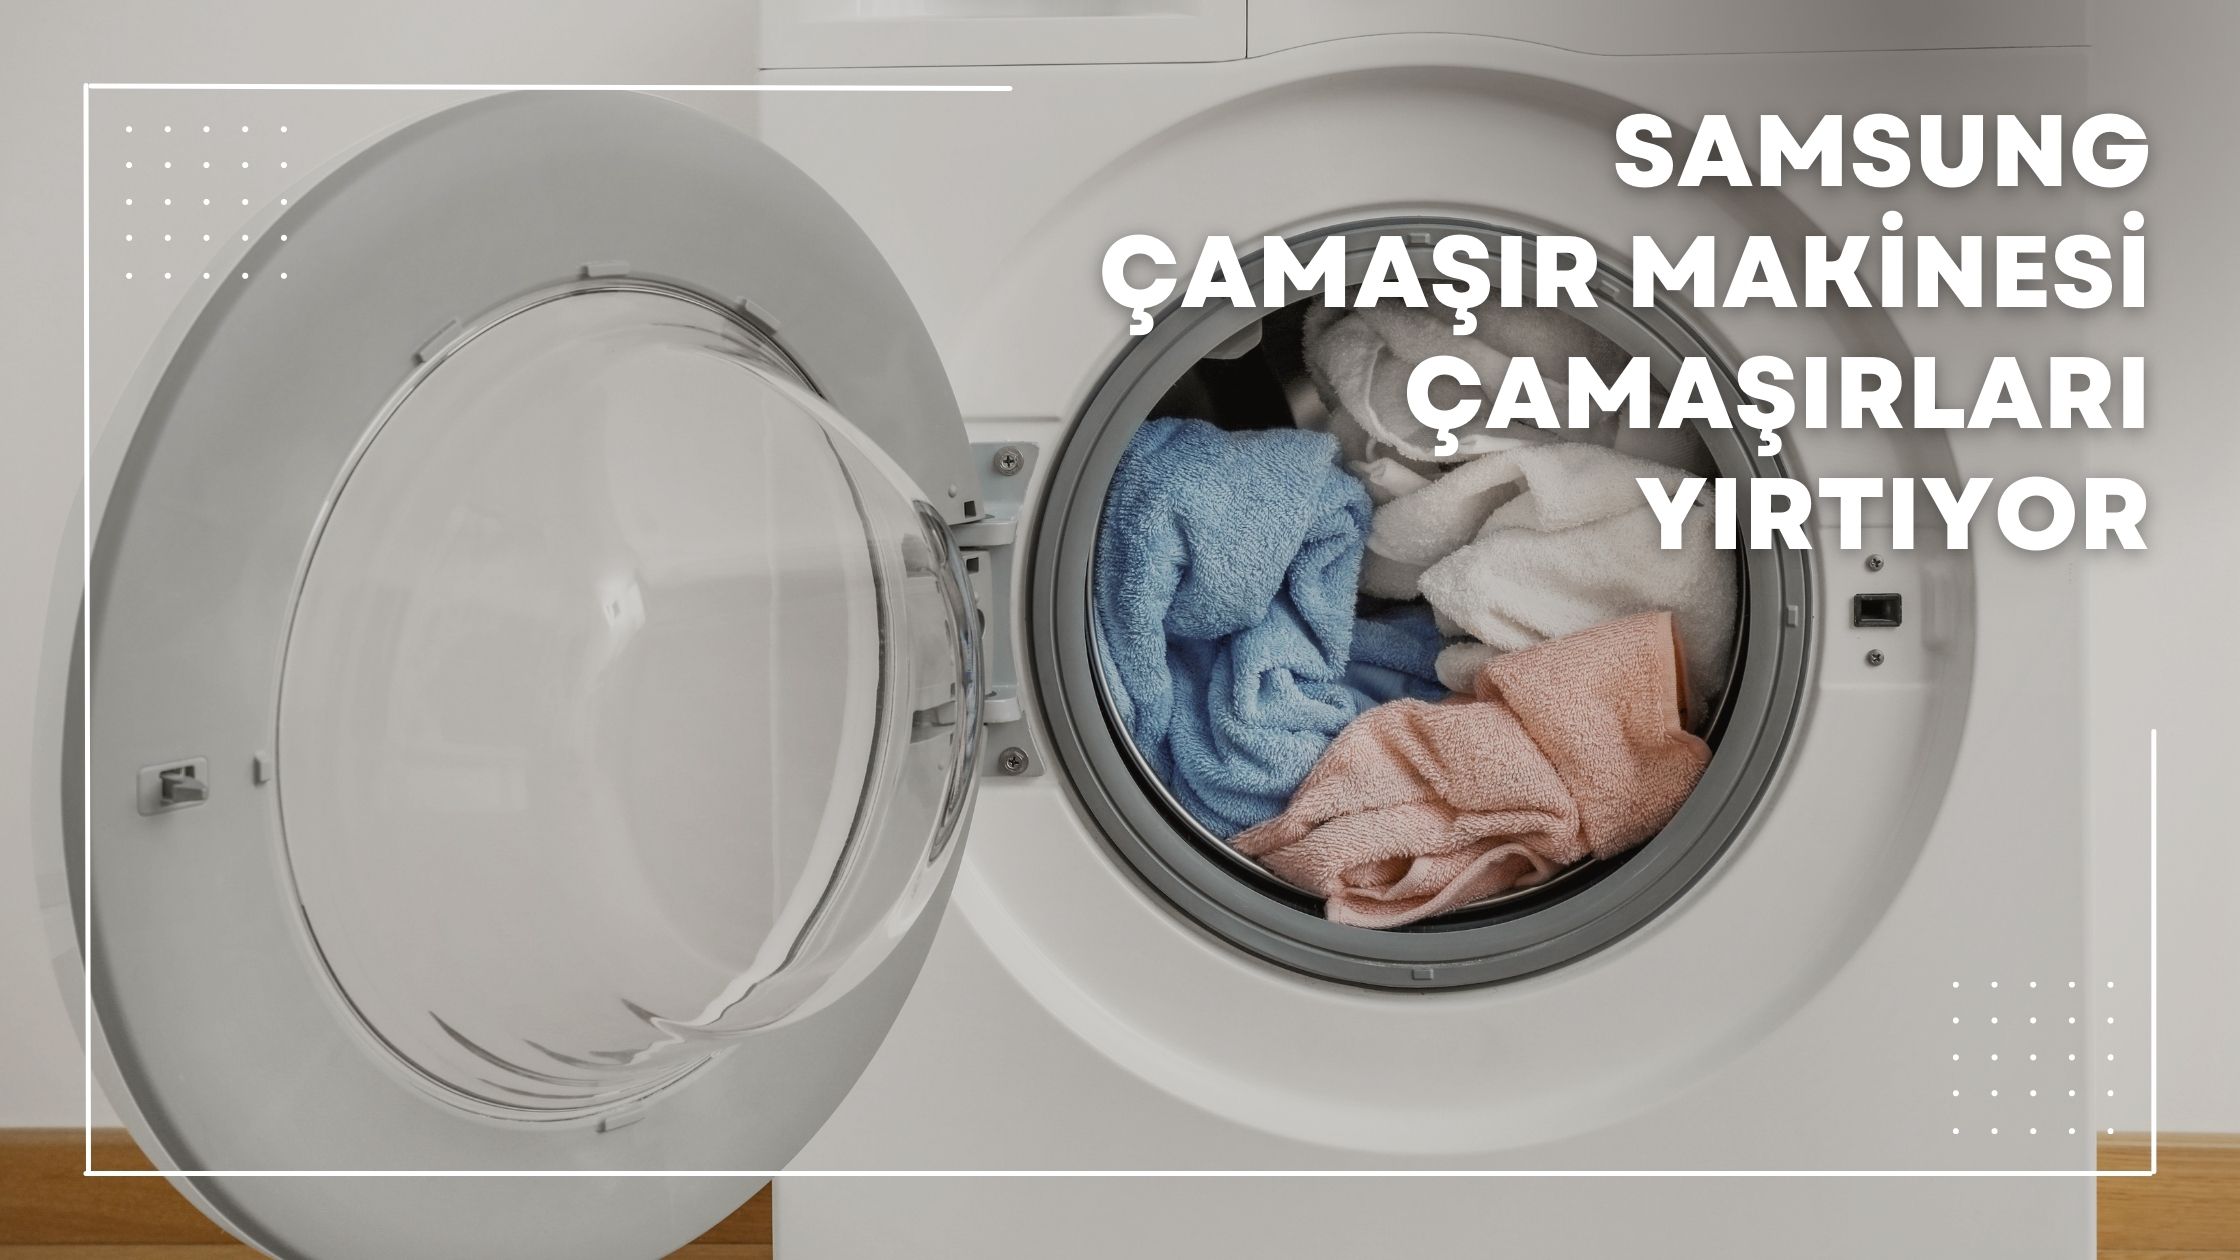 Samsung Çamaşır Makinesi Çamaşırları Yırtıyor